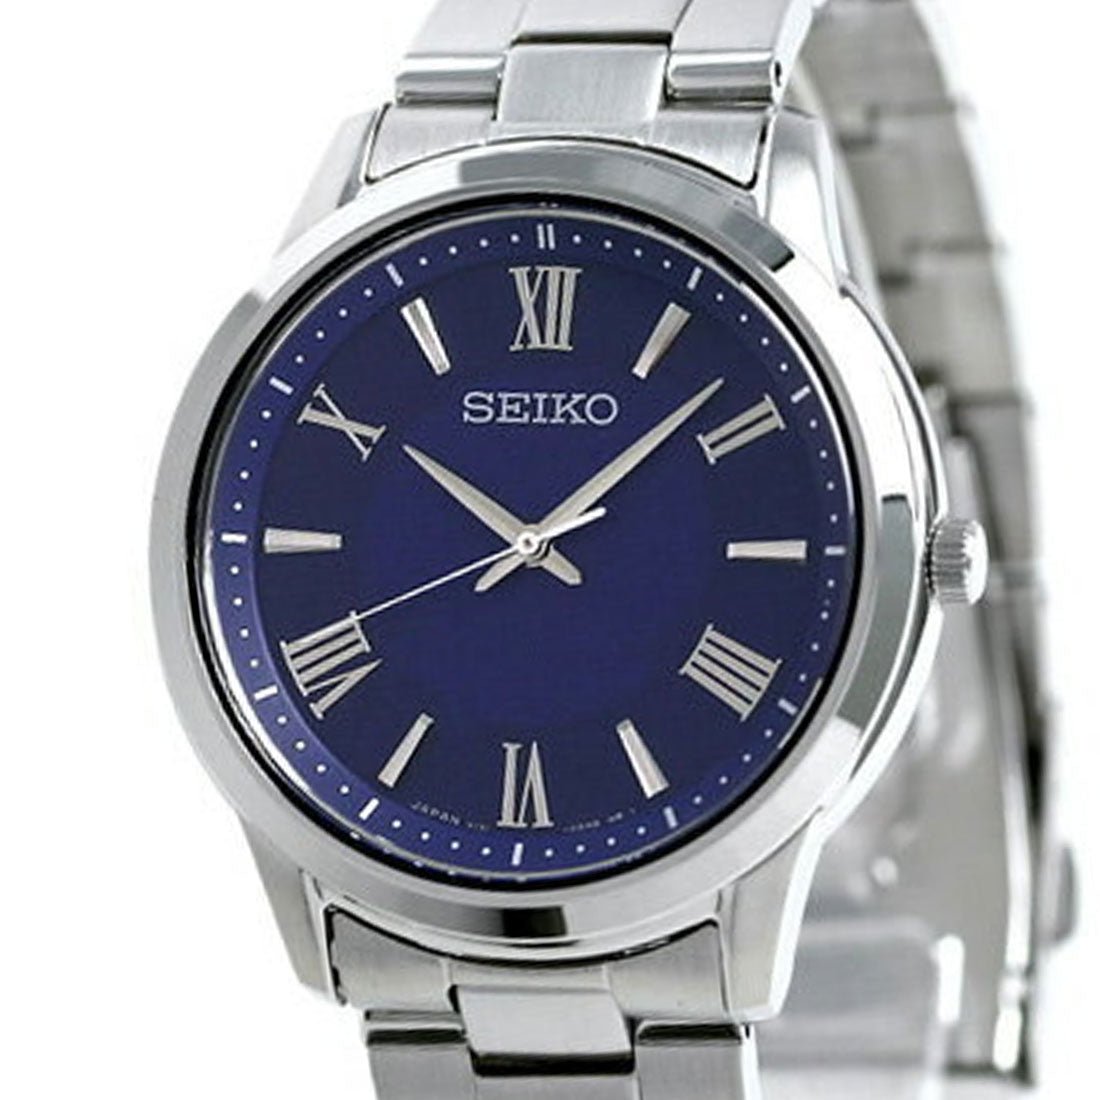 Seiko Selection Solar JDM Watch SBPL009 -Seiko